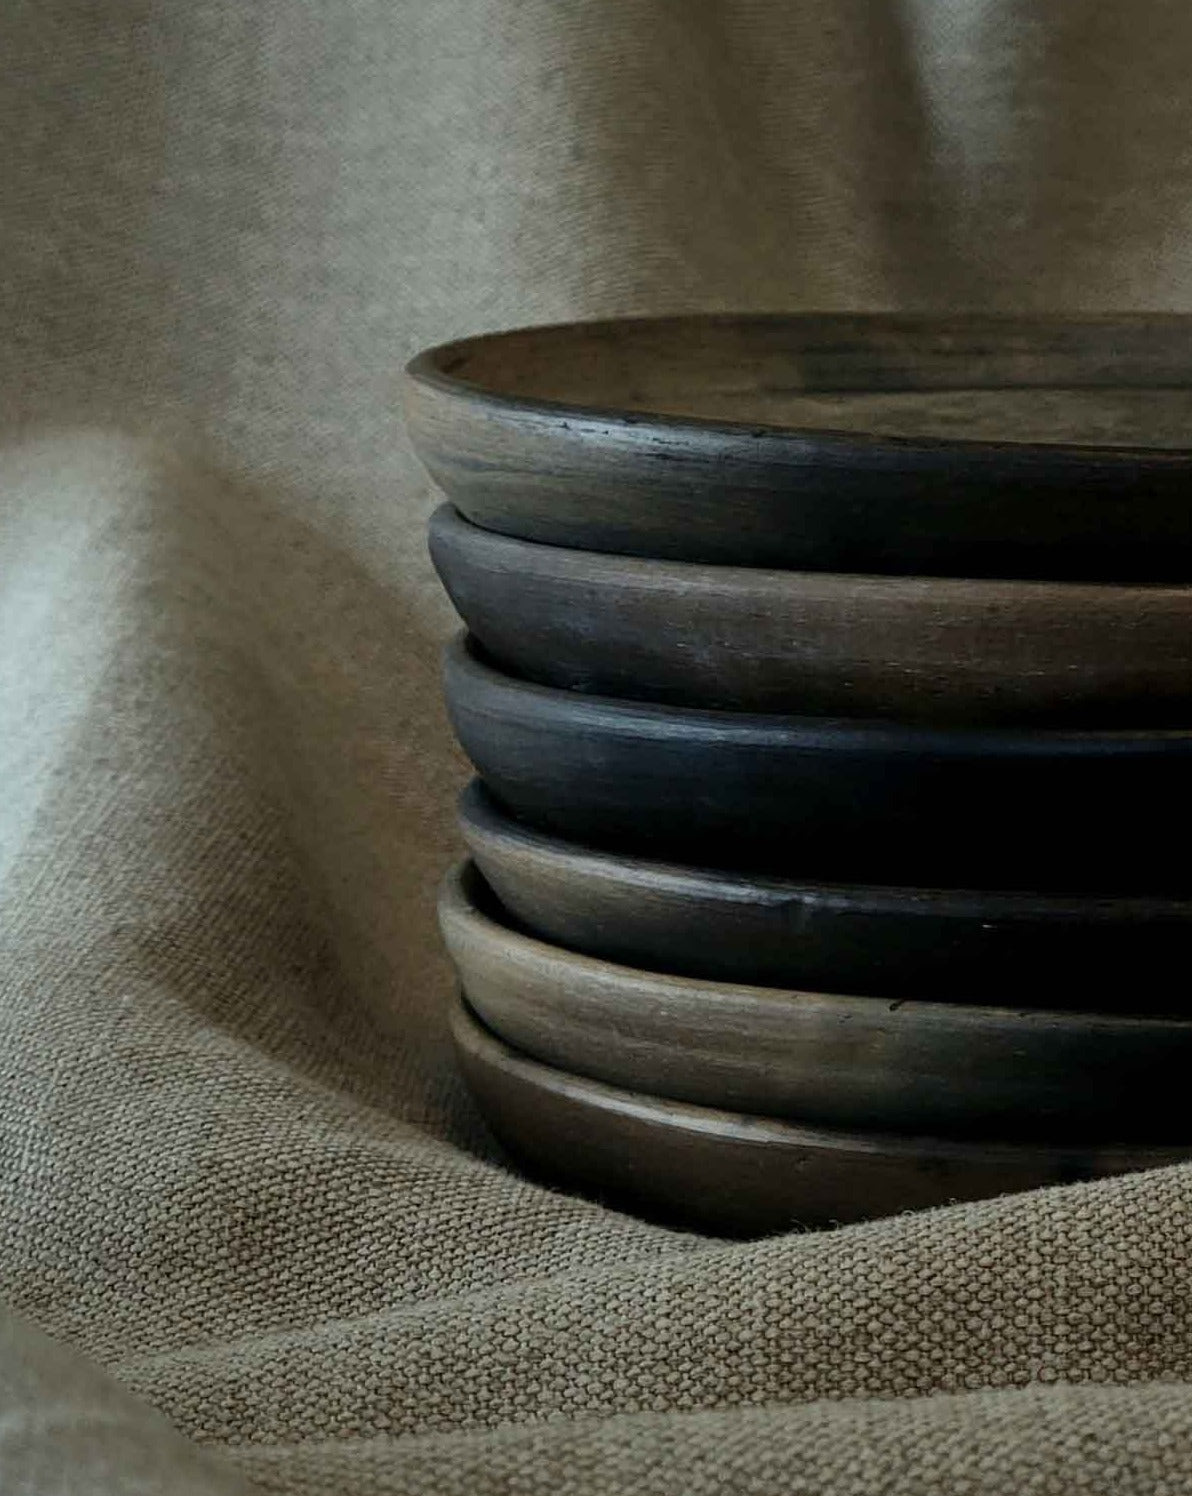 Oaxacan Pottery Platter Plate Dinnerware Set 10”